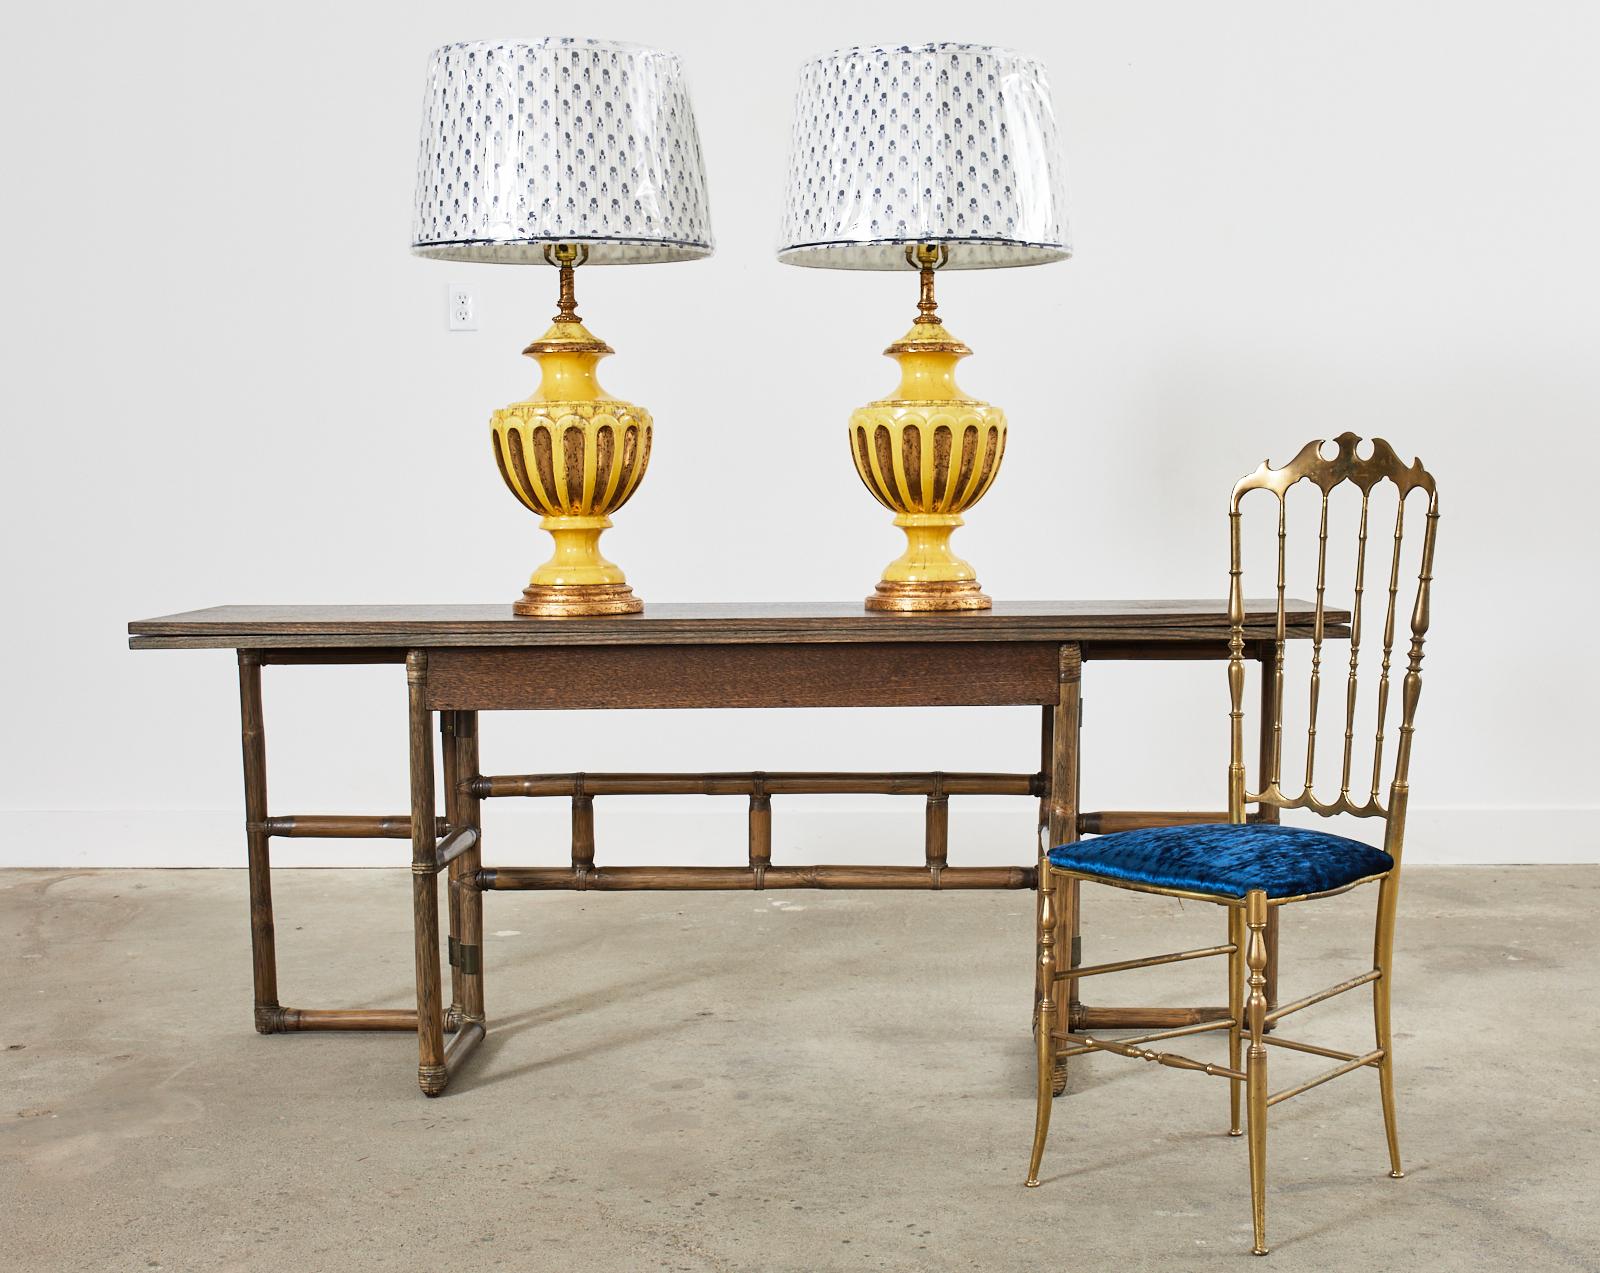 Fantastique paire de lampes de table en porcelaine de style Hollywood Regency du milieu du siècle dernier par le Studio Nardini de Californie. Les lampes présentent une étonnante forme d'urne à glaçure jaune avec des accents dorés appliqués. Les